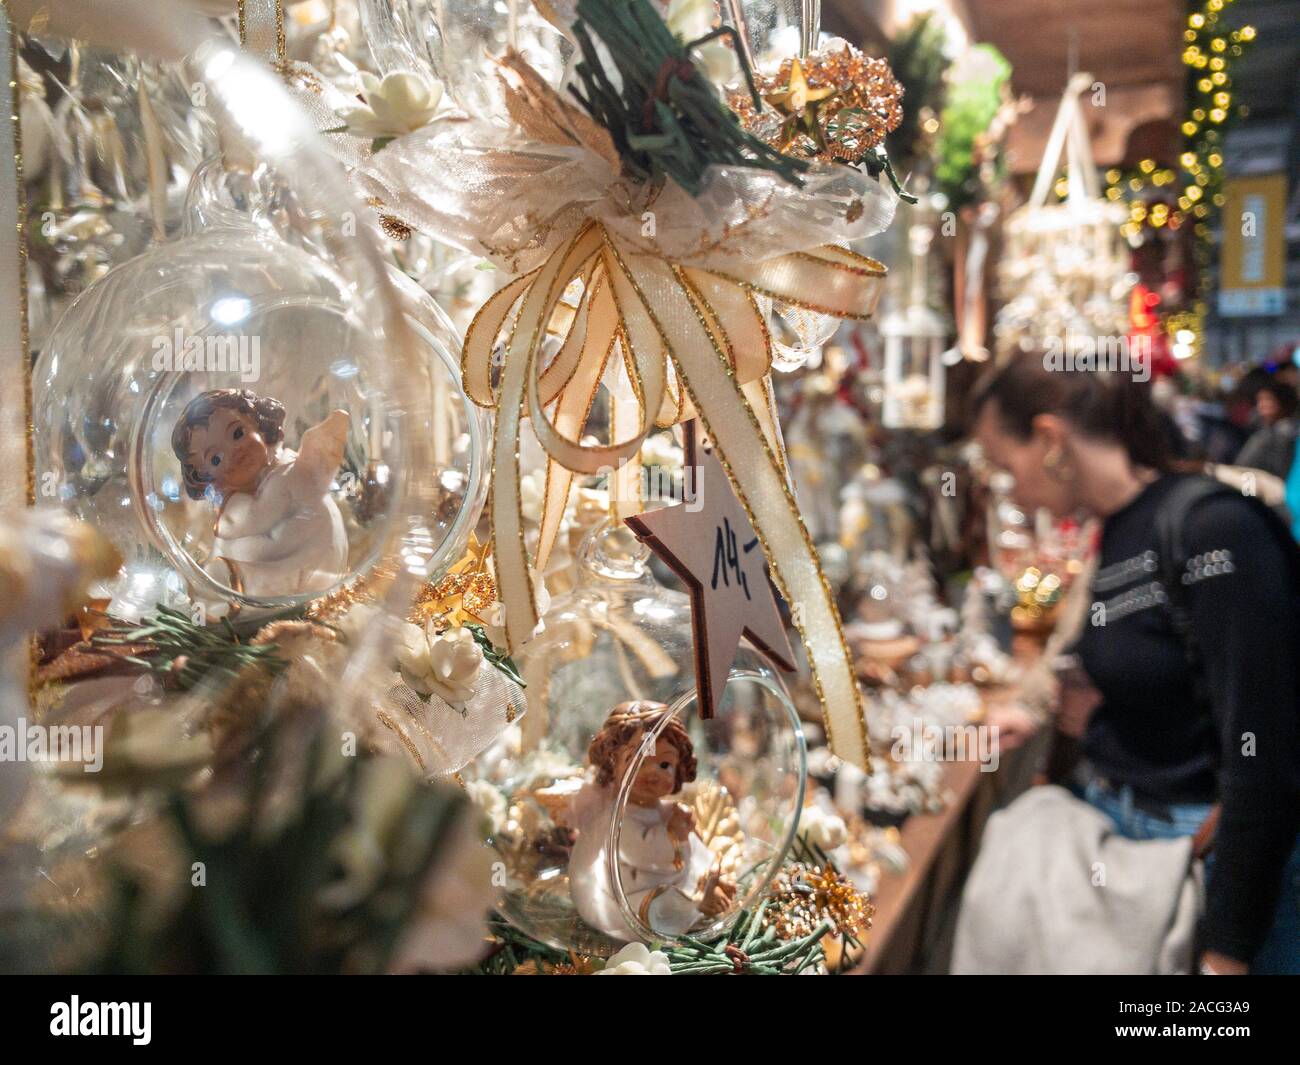 Mailand, Italien - 1. Dezember 2019: Mailand, Italien - 1. Dezember 2019: Dekorationen zu einem Weihnachtsmarkt im Inneren Artigiano in Fiera, Messe, junge Handwerker' Stockfoto